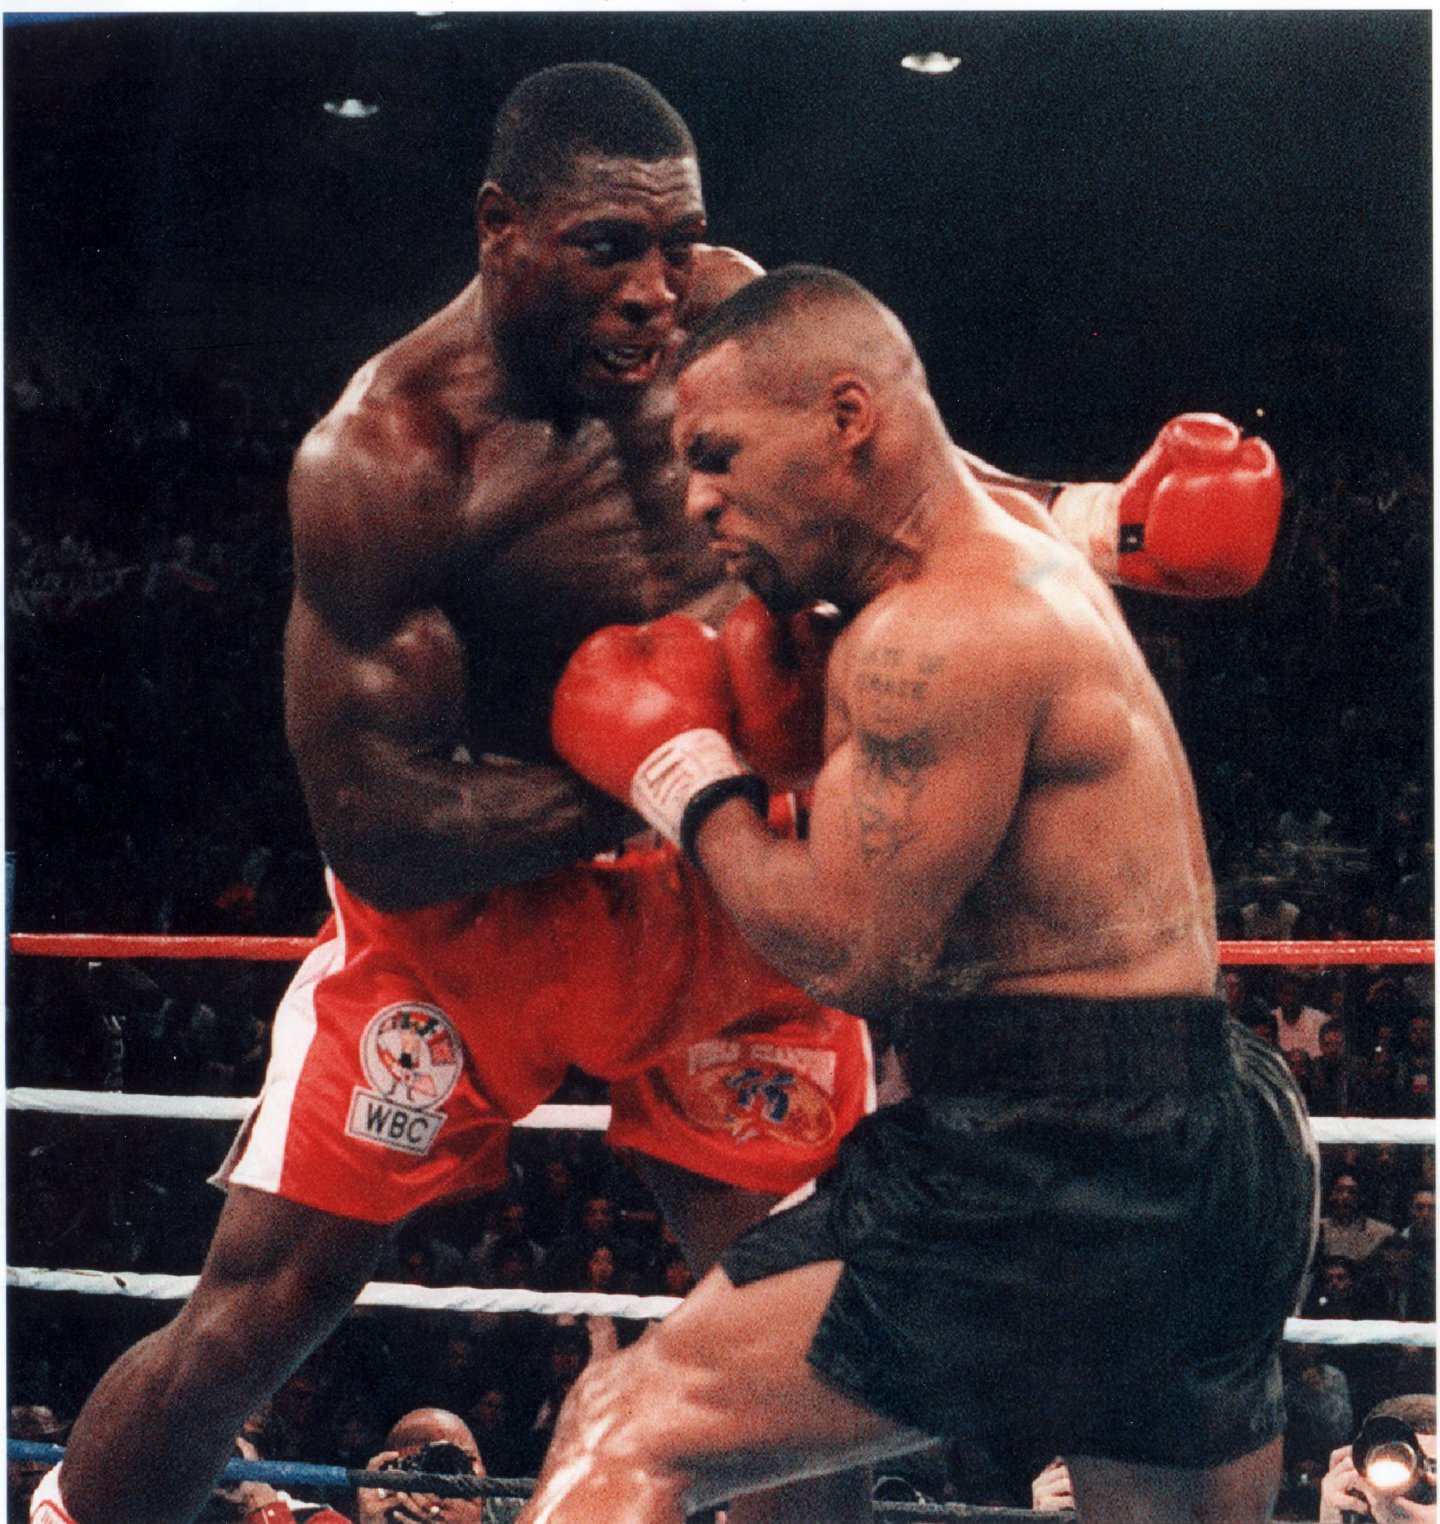 Frank kämpfte 1996 gegen den gnadenlosen US-Schwergewichtler Mike Tyson